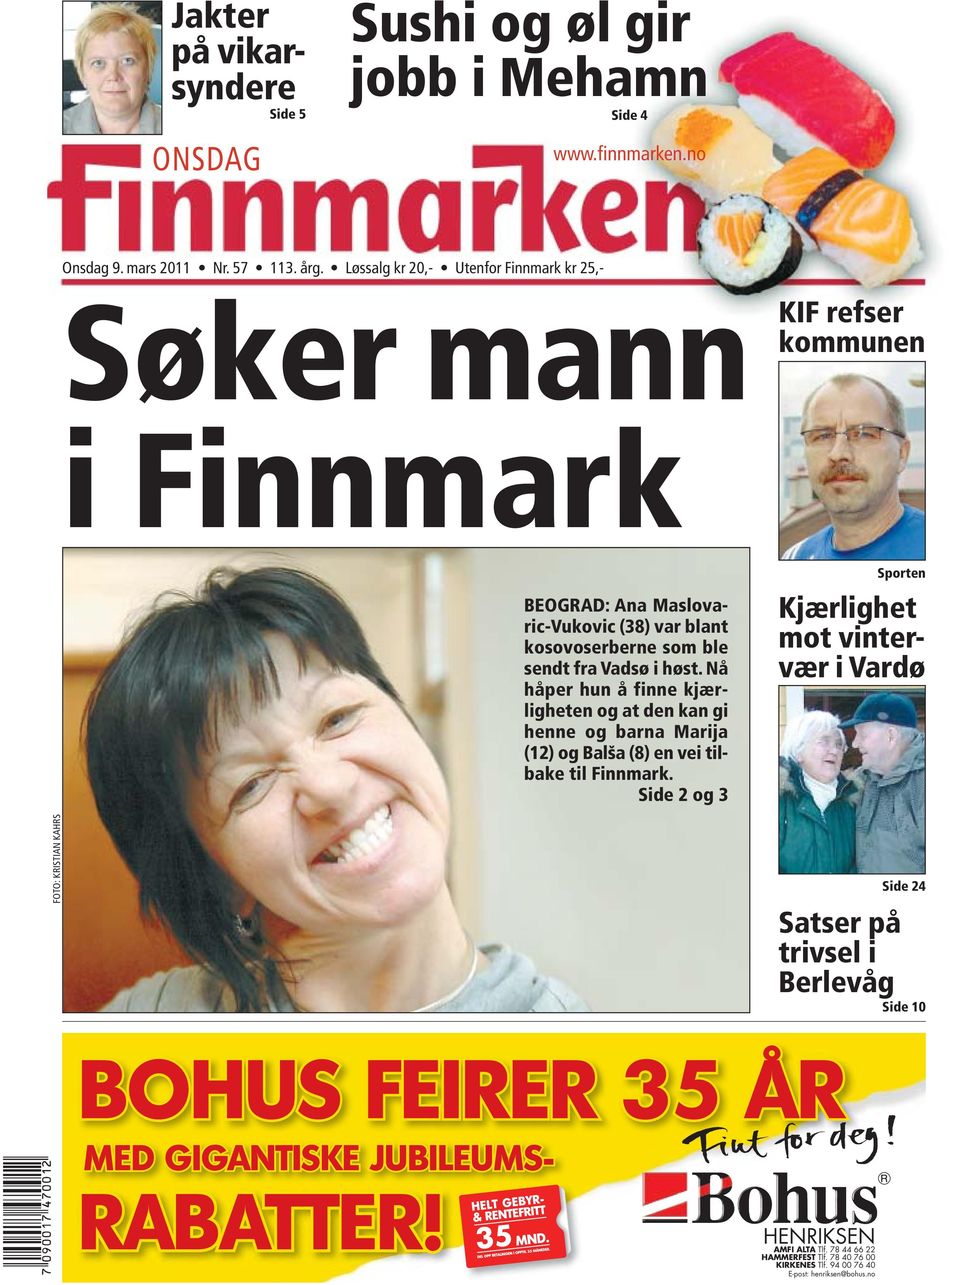 Nå håper hun å finne kjærligheten og at den kan gi henne og barna Marija (12) og Balša (8) en vei tilbake til Finnmark.